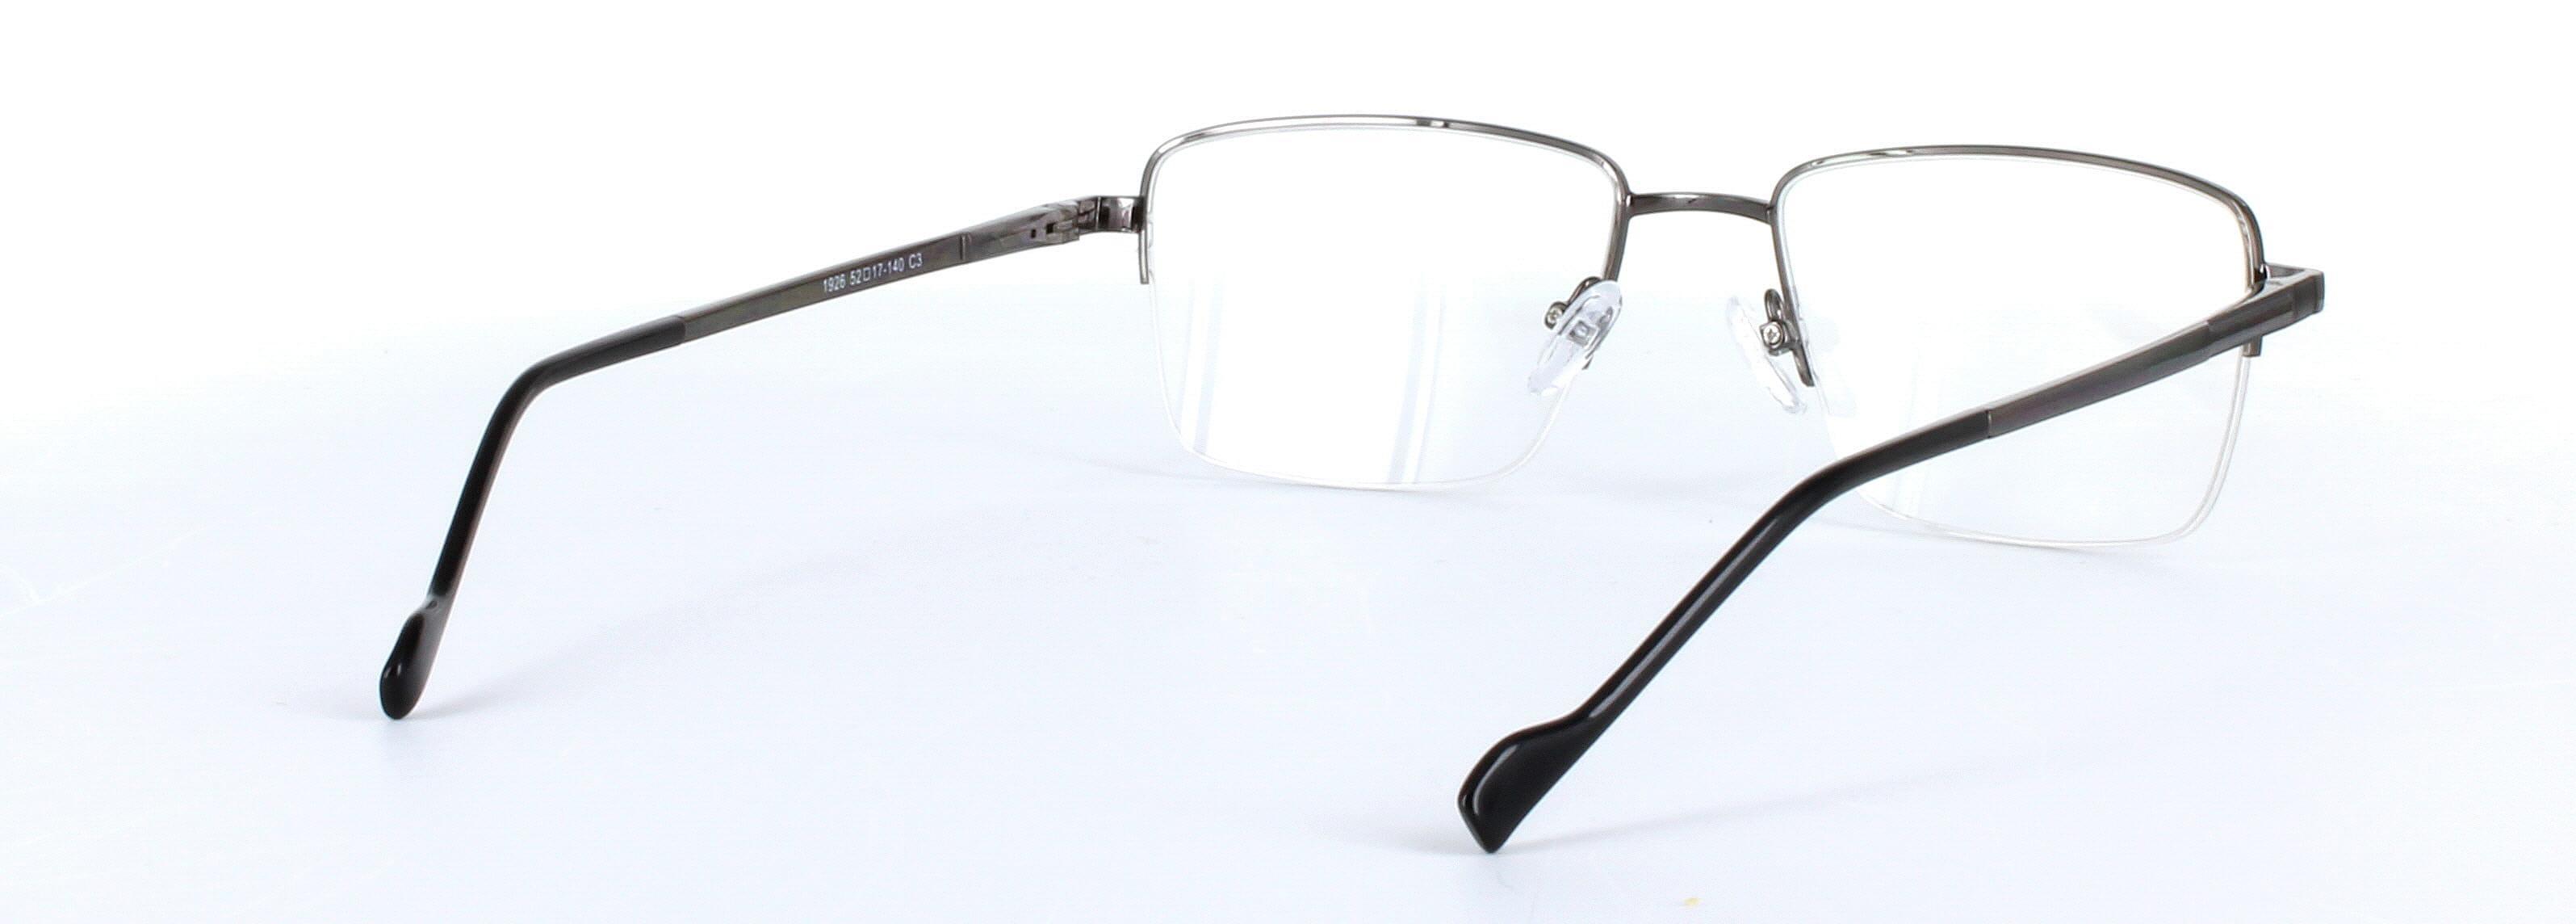 Miguel Gunmetal Semi Rimless Metal Glasses - Image View 4